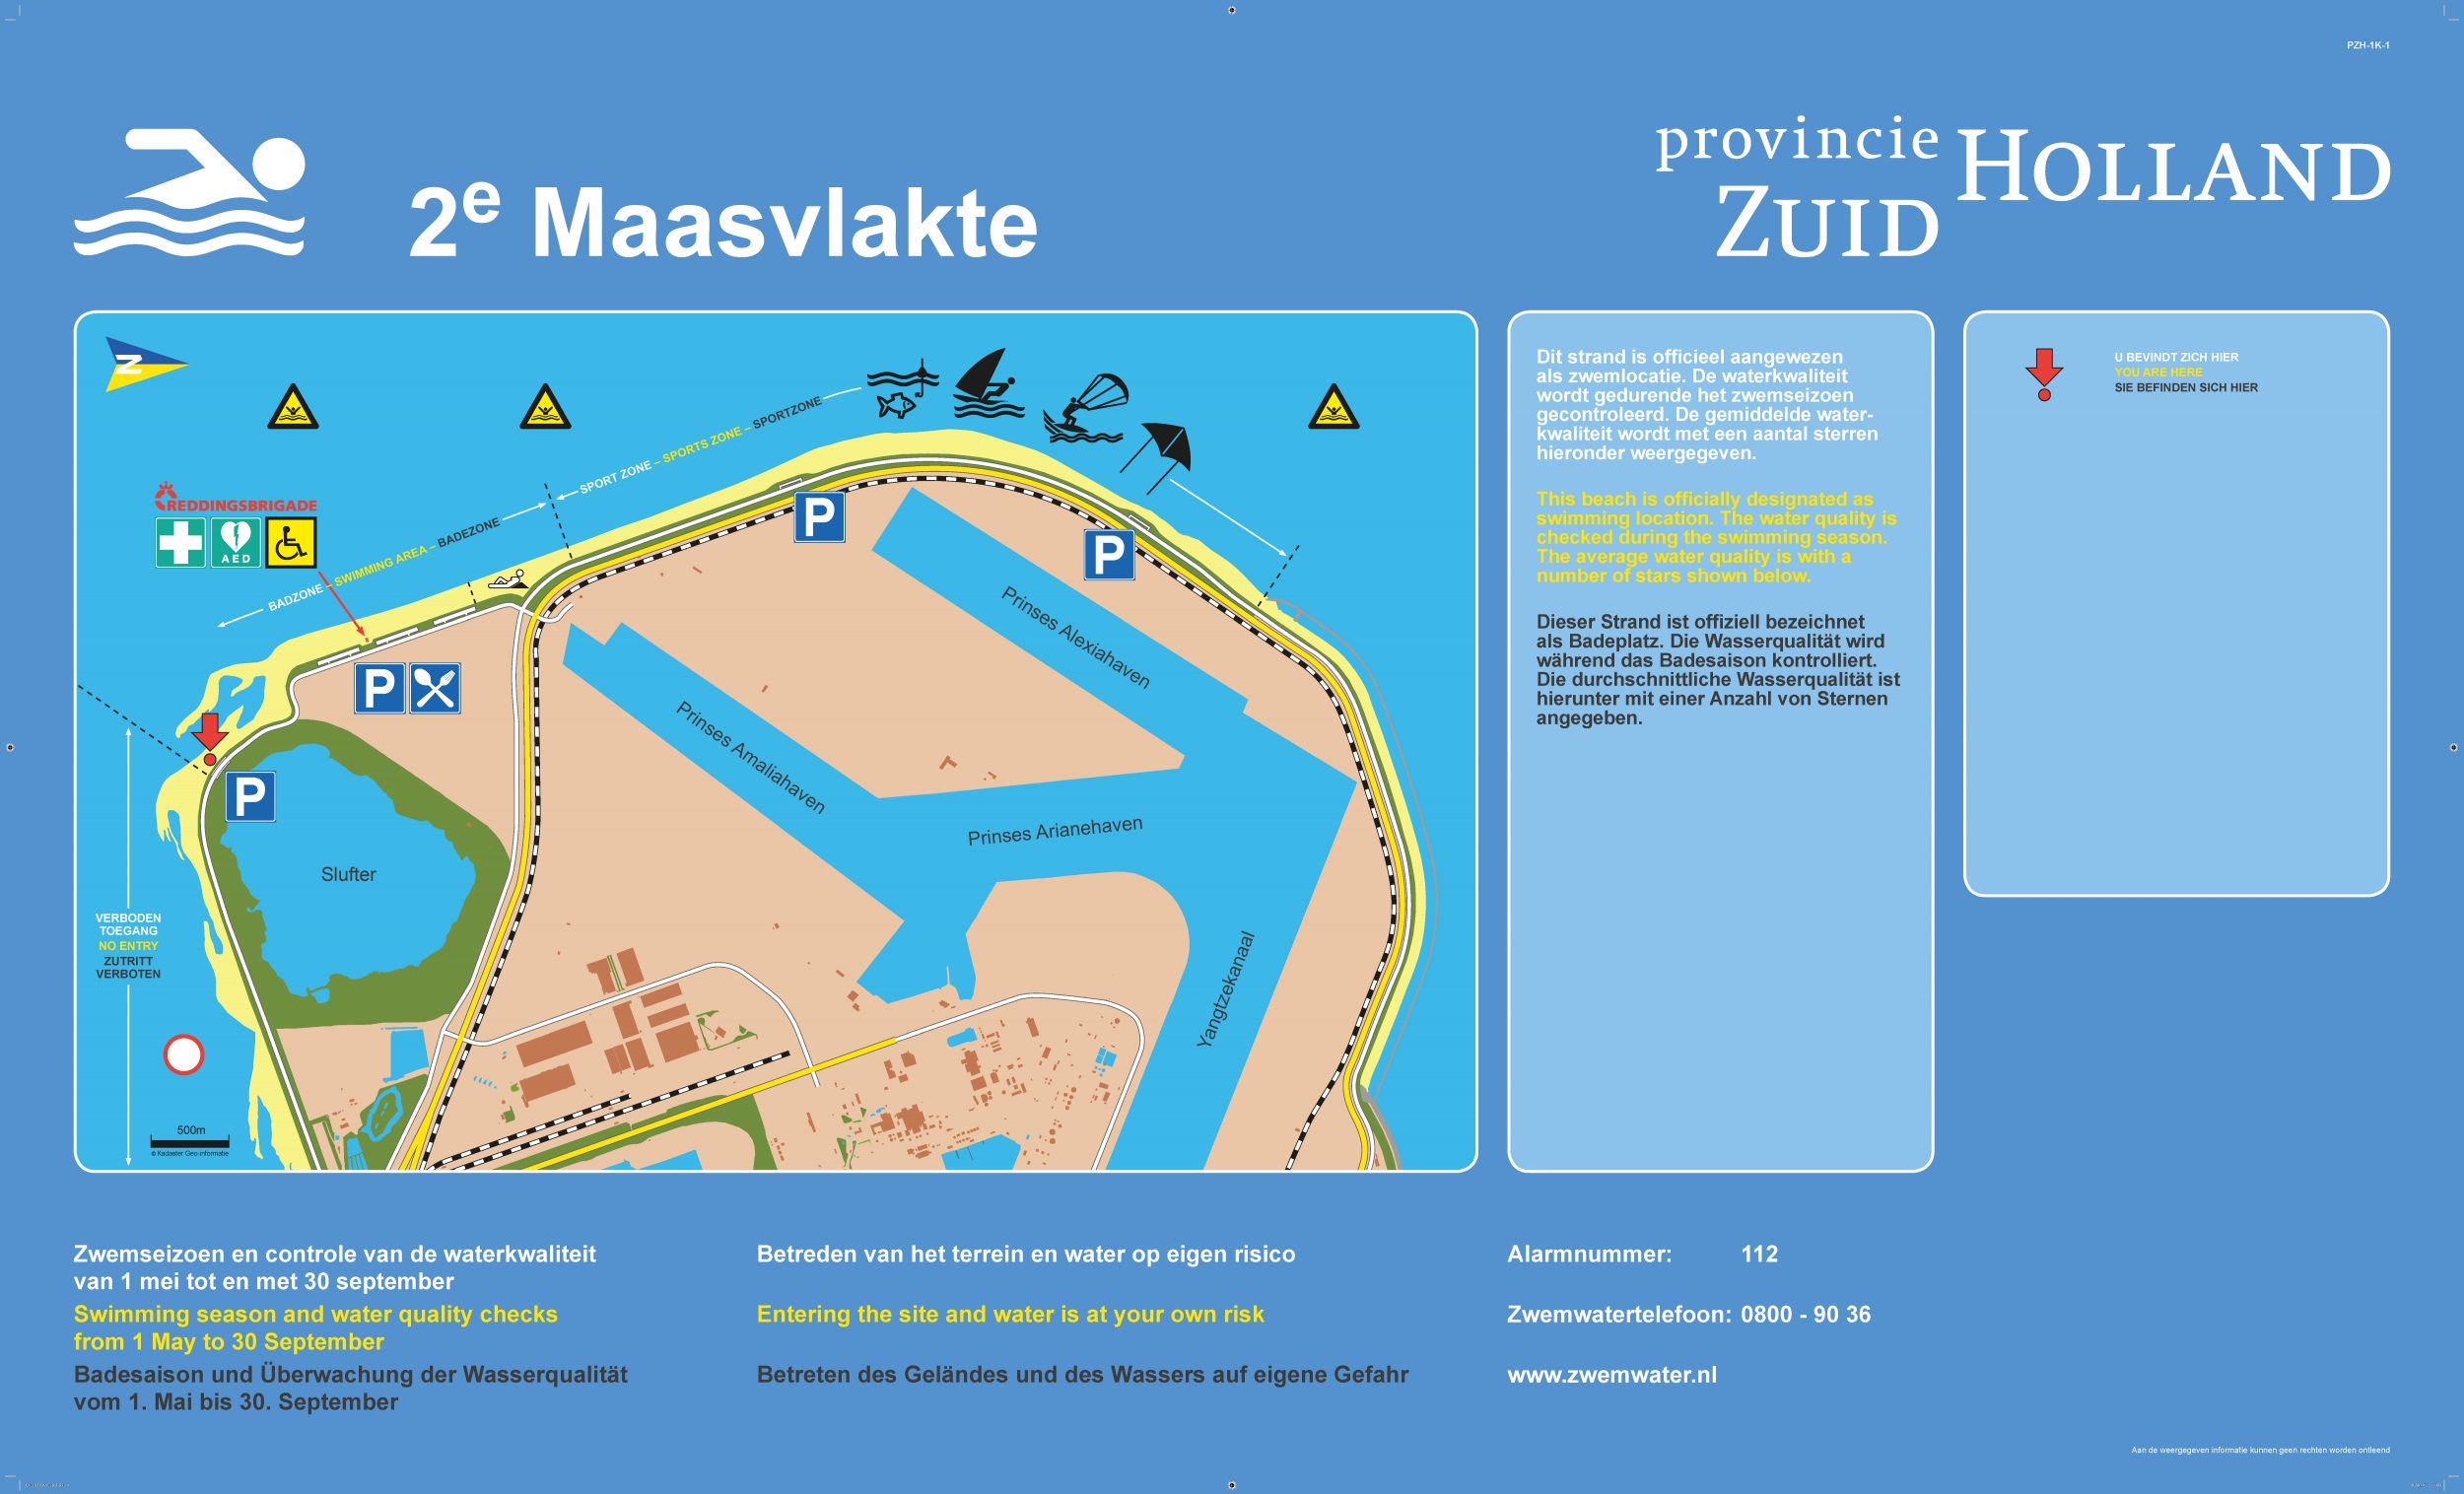 Het informatiebord bij zwemlocatie Tweede Maasvlakte